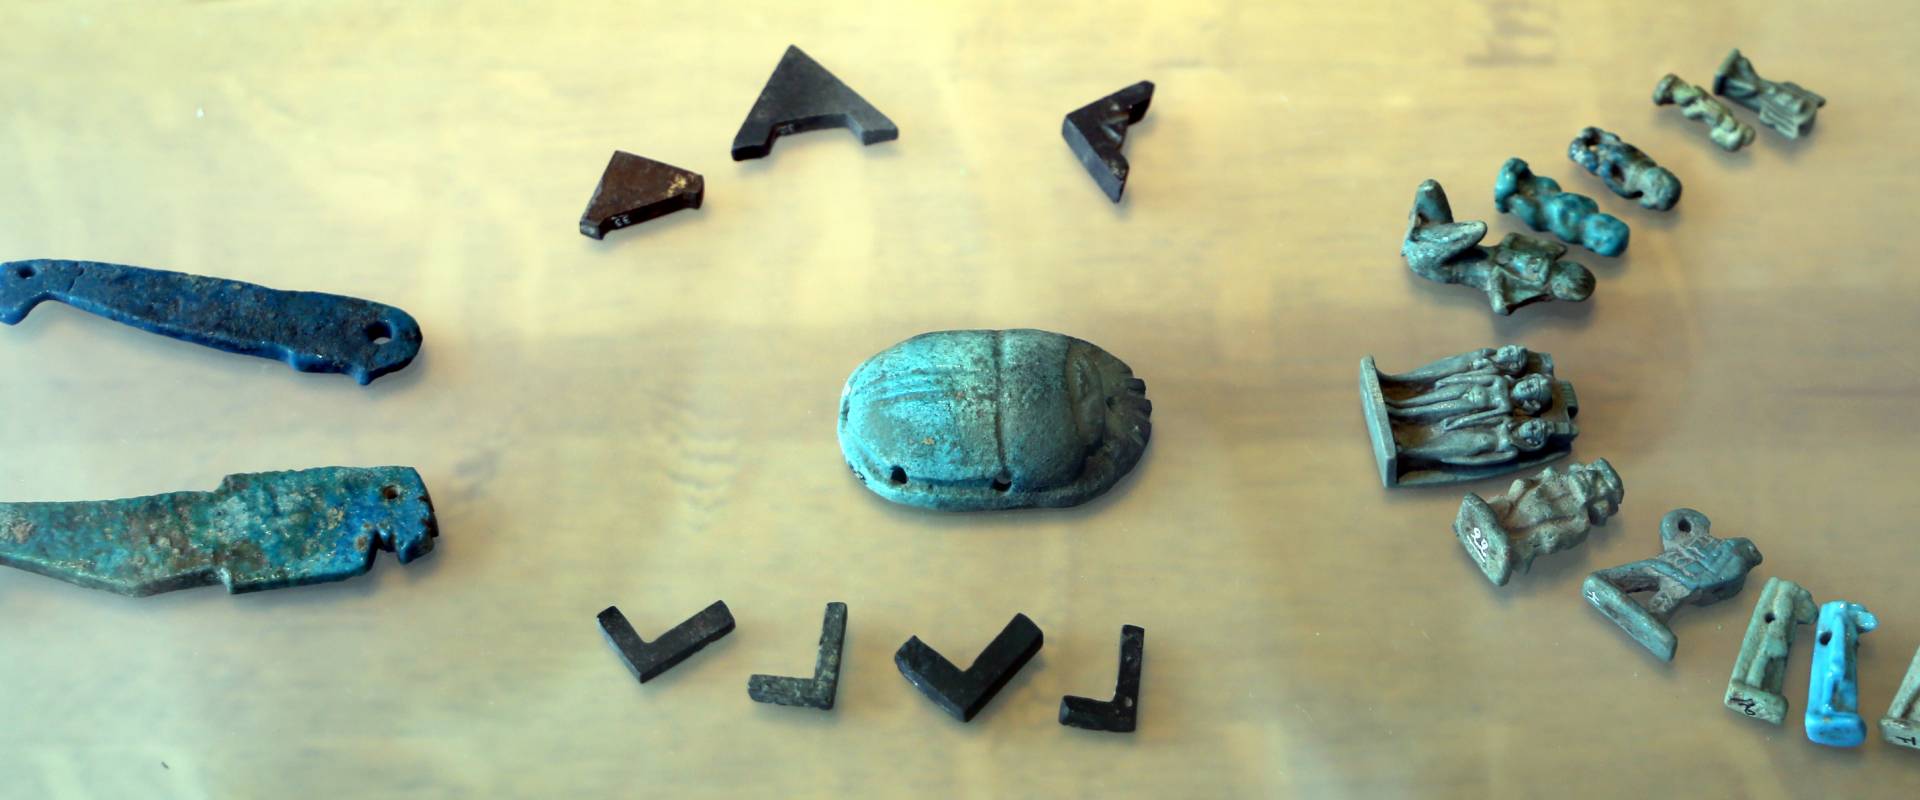 Epoca tolemaica, amuleti in faience, statuette e scarabeo photo by Sailko